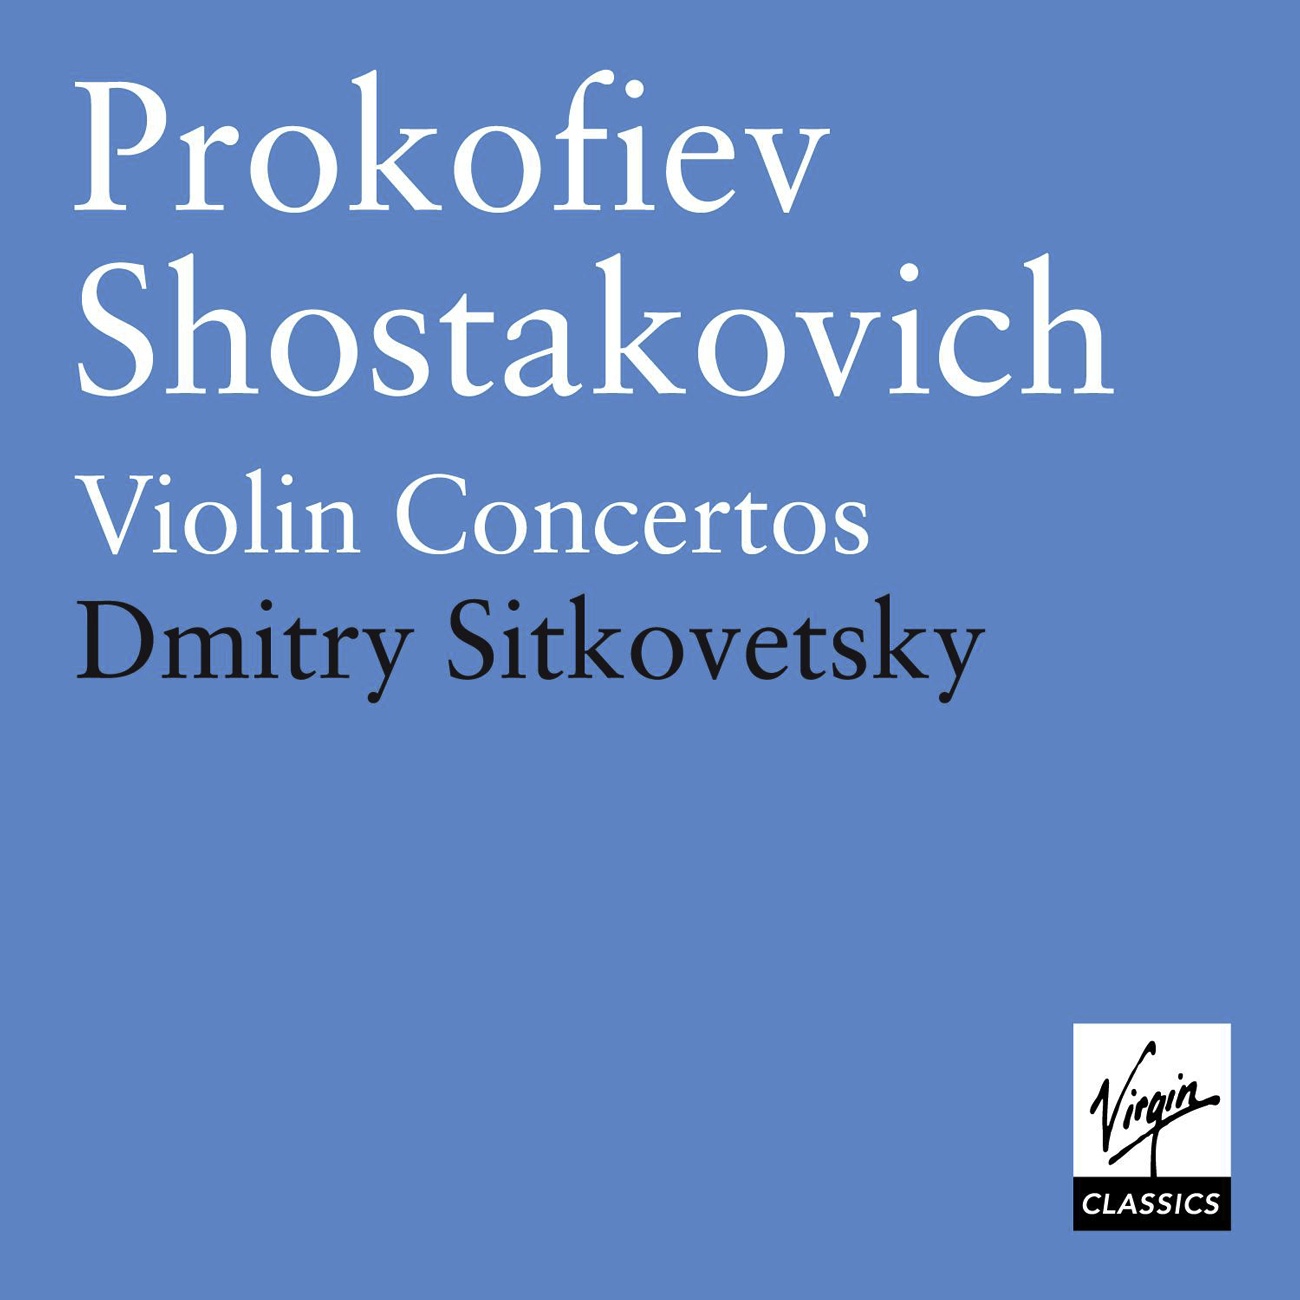 Violin Concerto No. 2 in G minor Op. 63: I. Allegro moderato